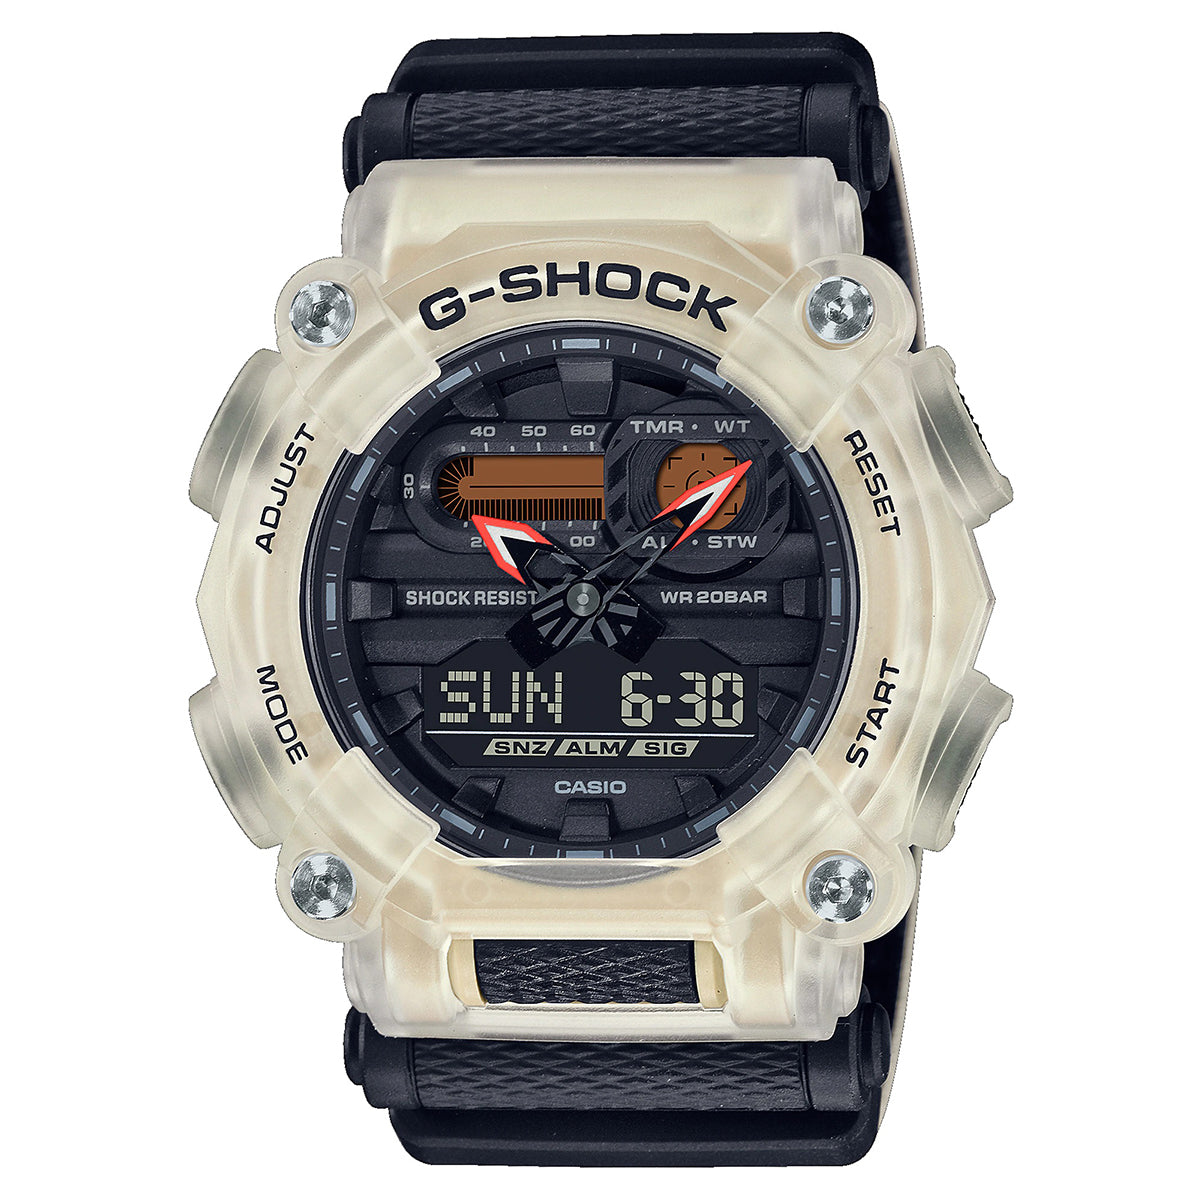 Casio - G-shock - GA-900TS-4ADR